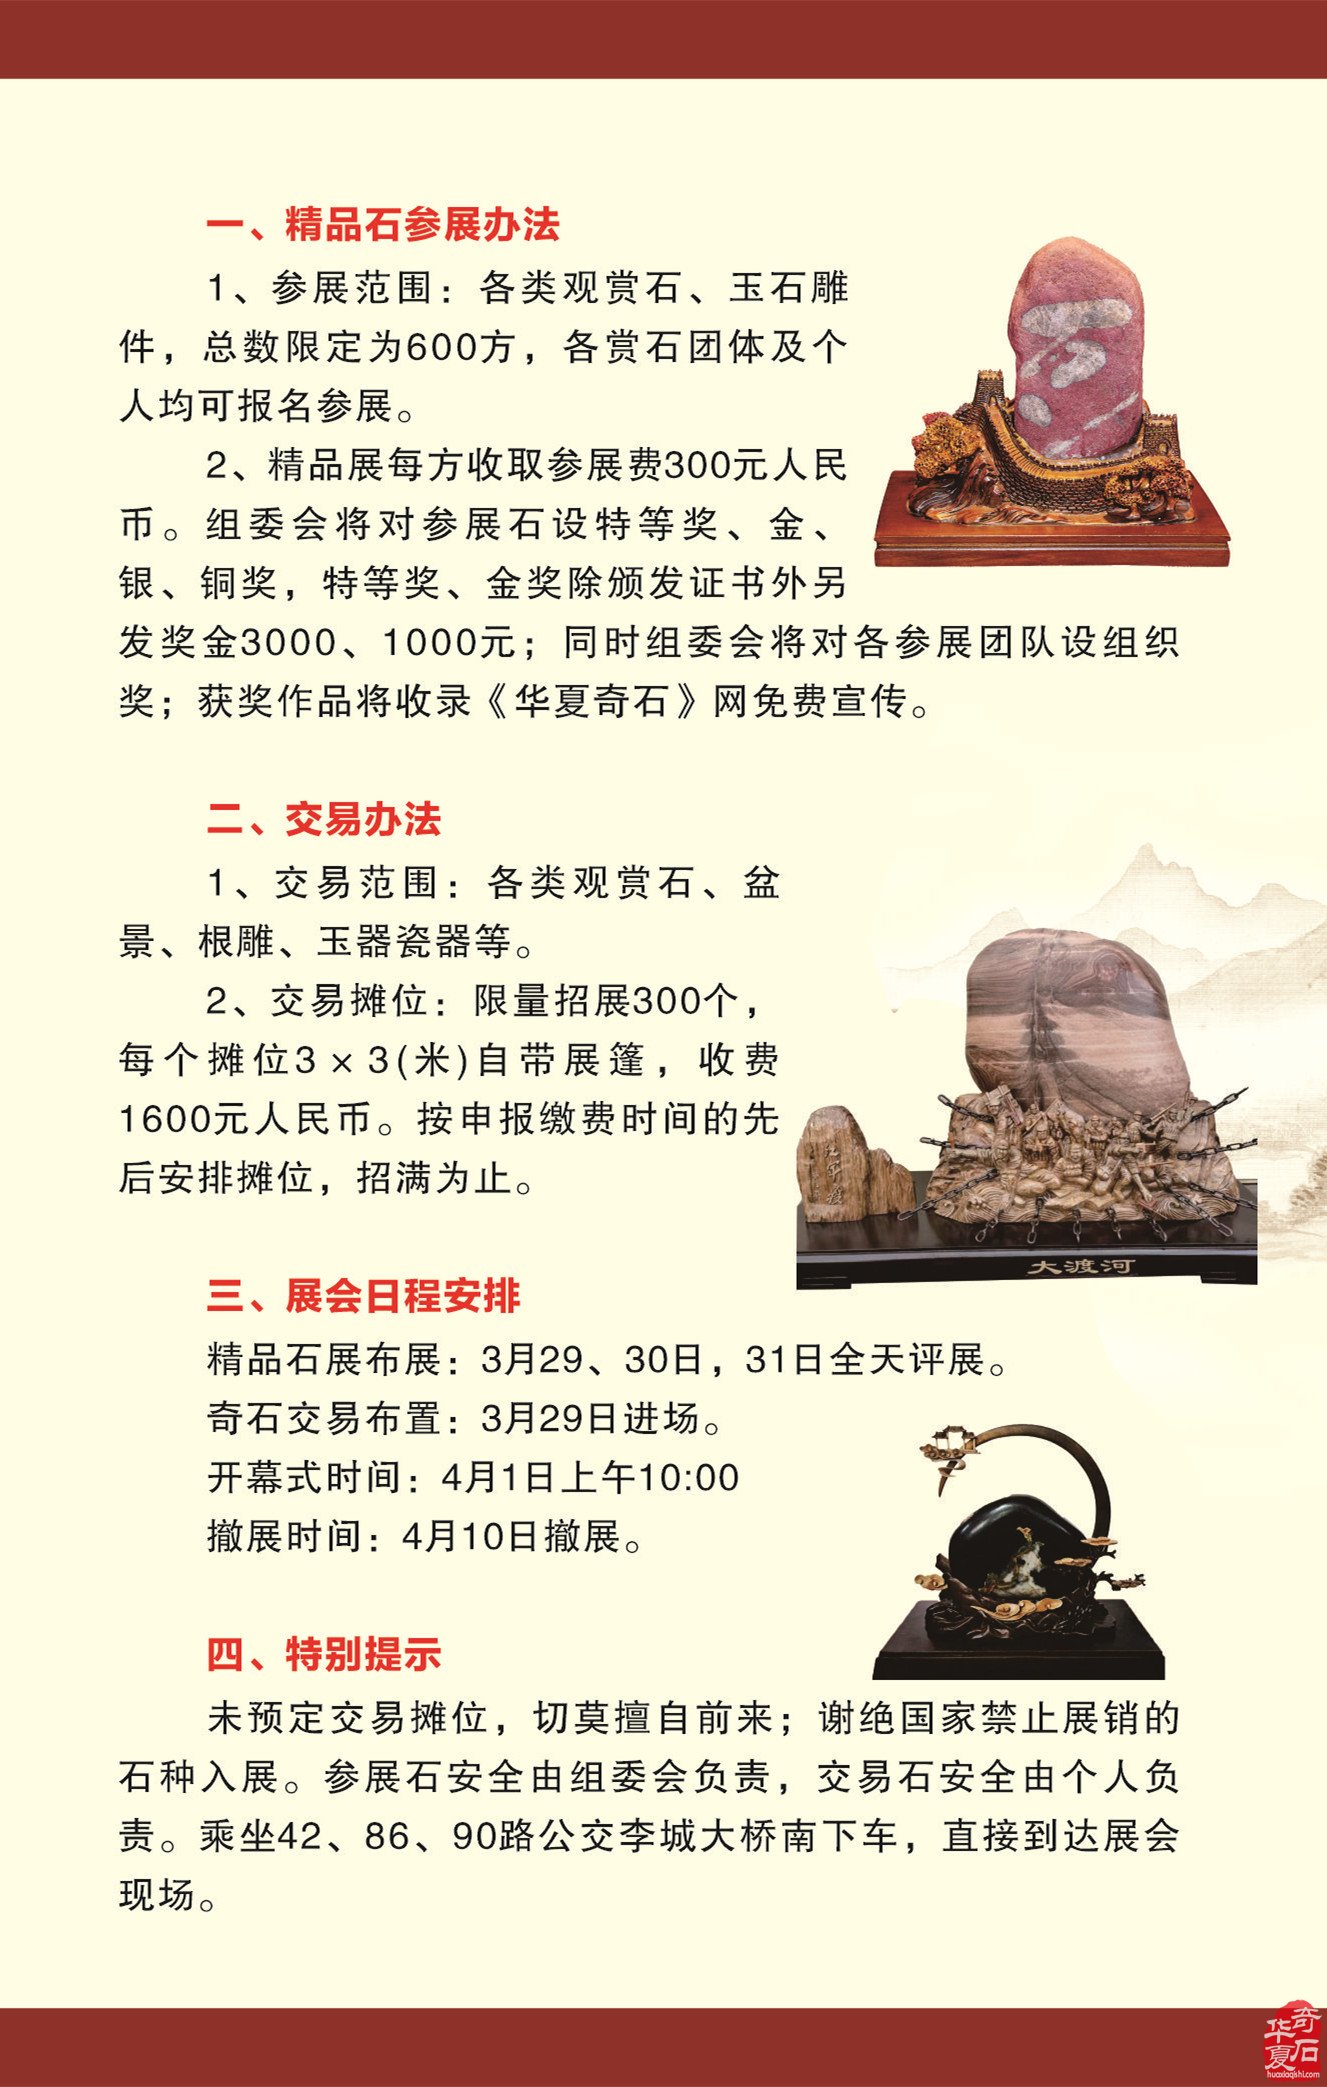 中国洛阳第三十二届国际赏石文化艺术展暨交易会邀请函